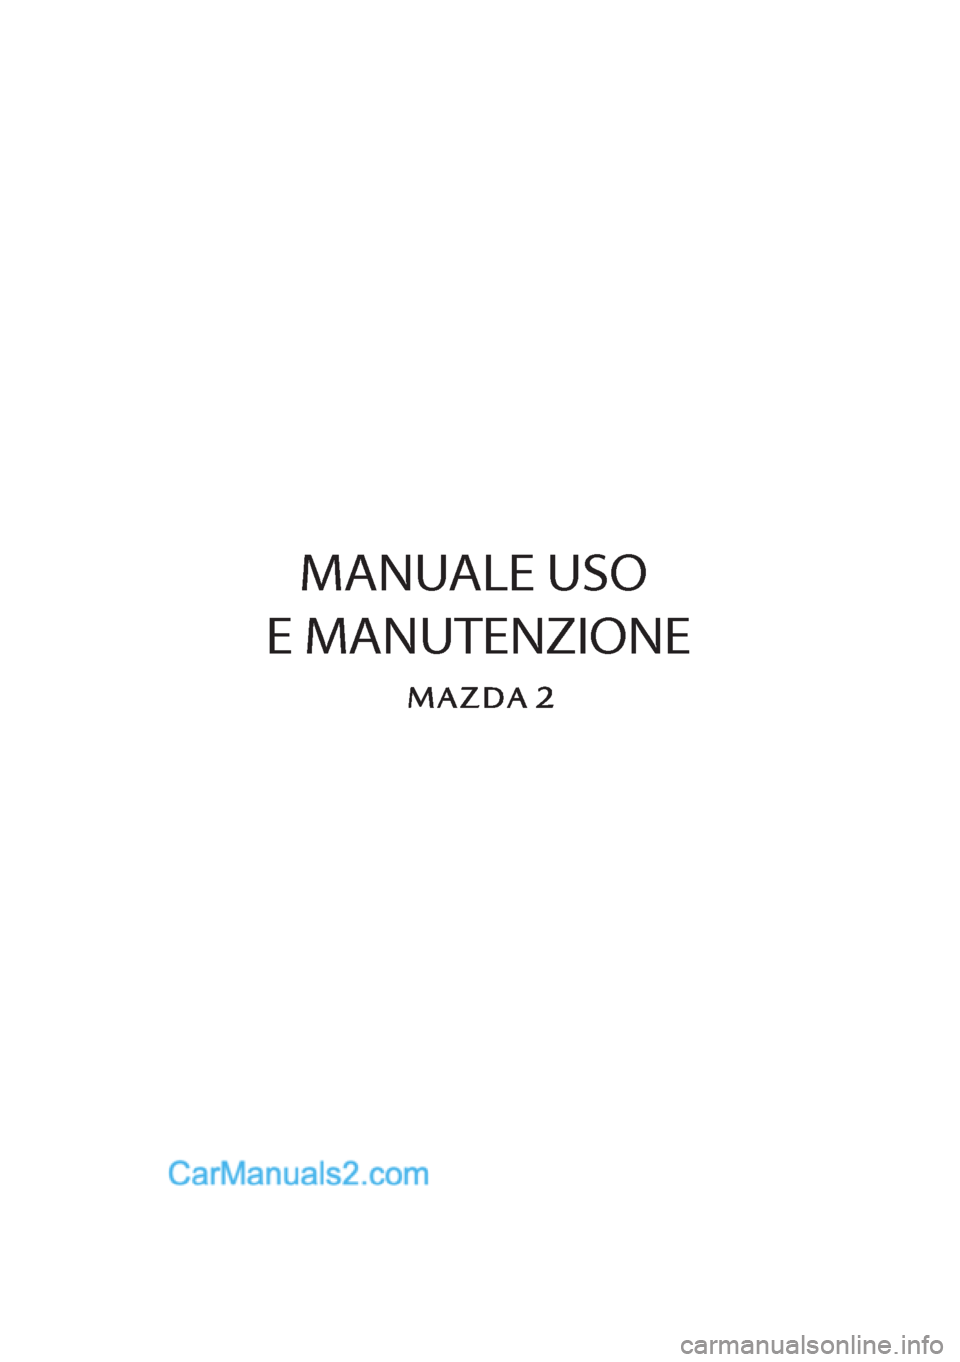 MAZDA MODEL 2 2019  Manuale del proprietario (in Italian)    MANUALE USO 
E MANUTENZIONE  